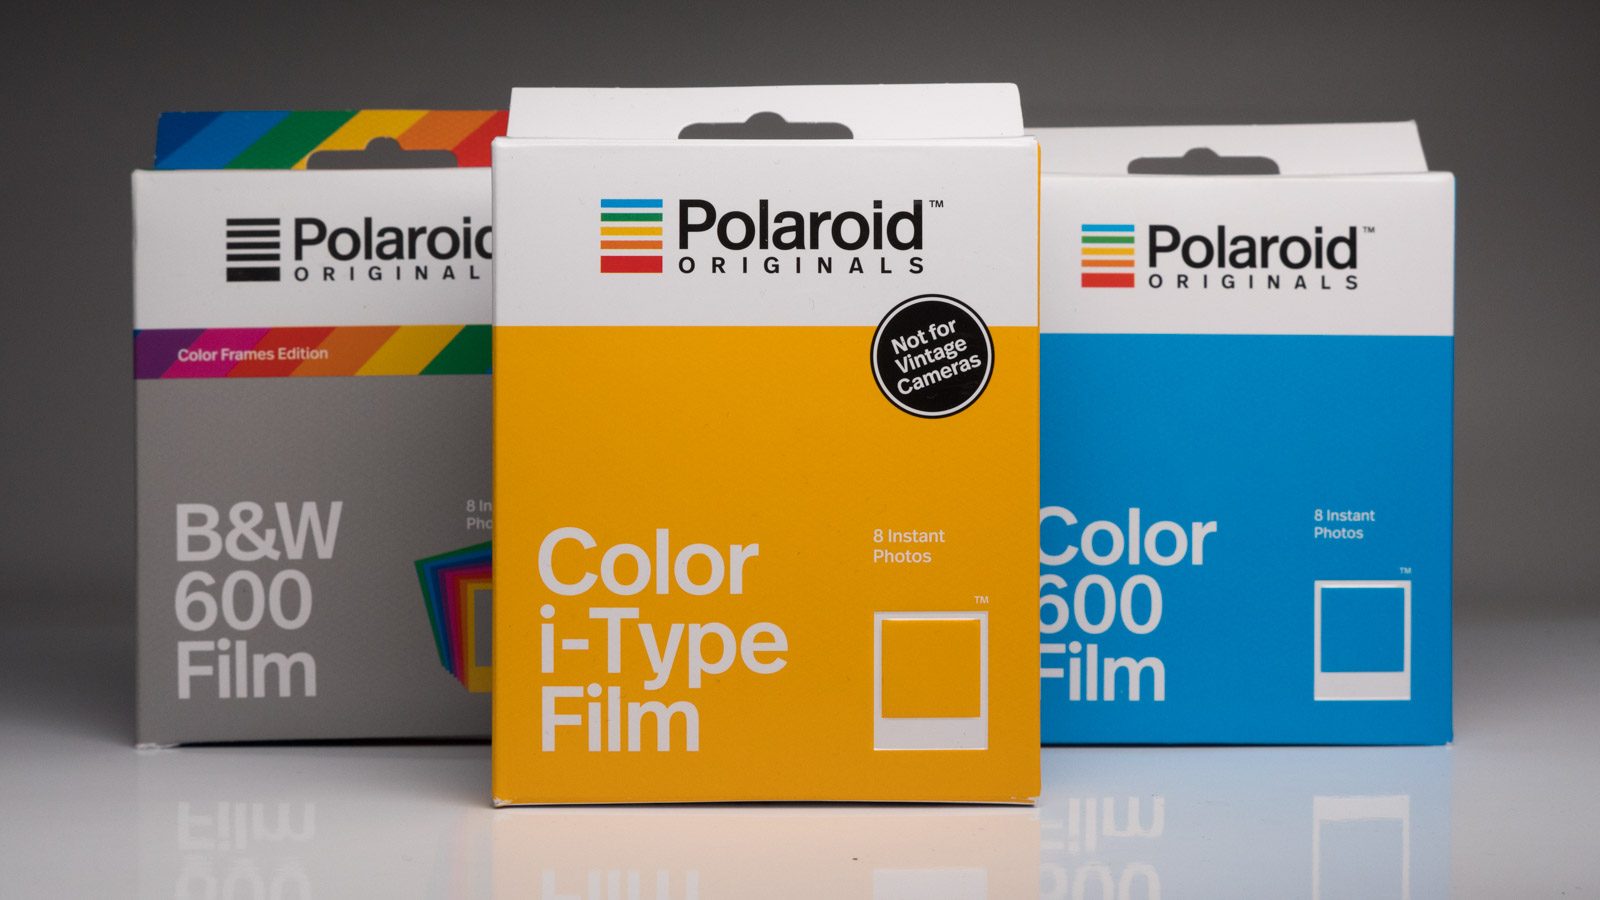 Test Polaroid OneStep2 : retour d'une icône - Les Numériques